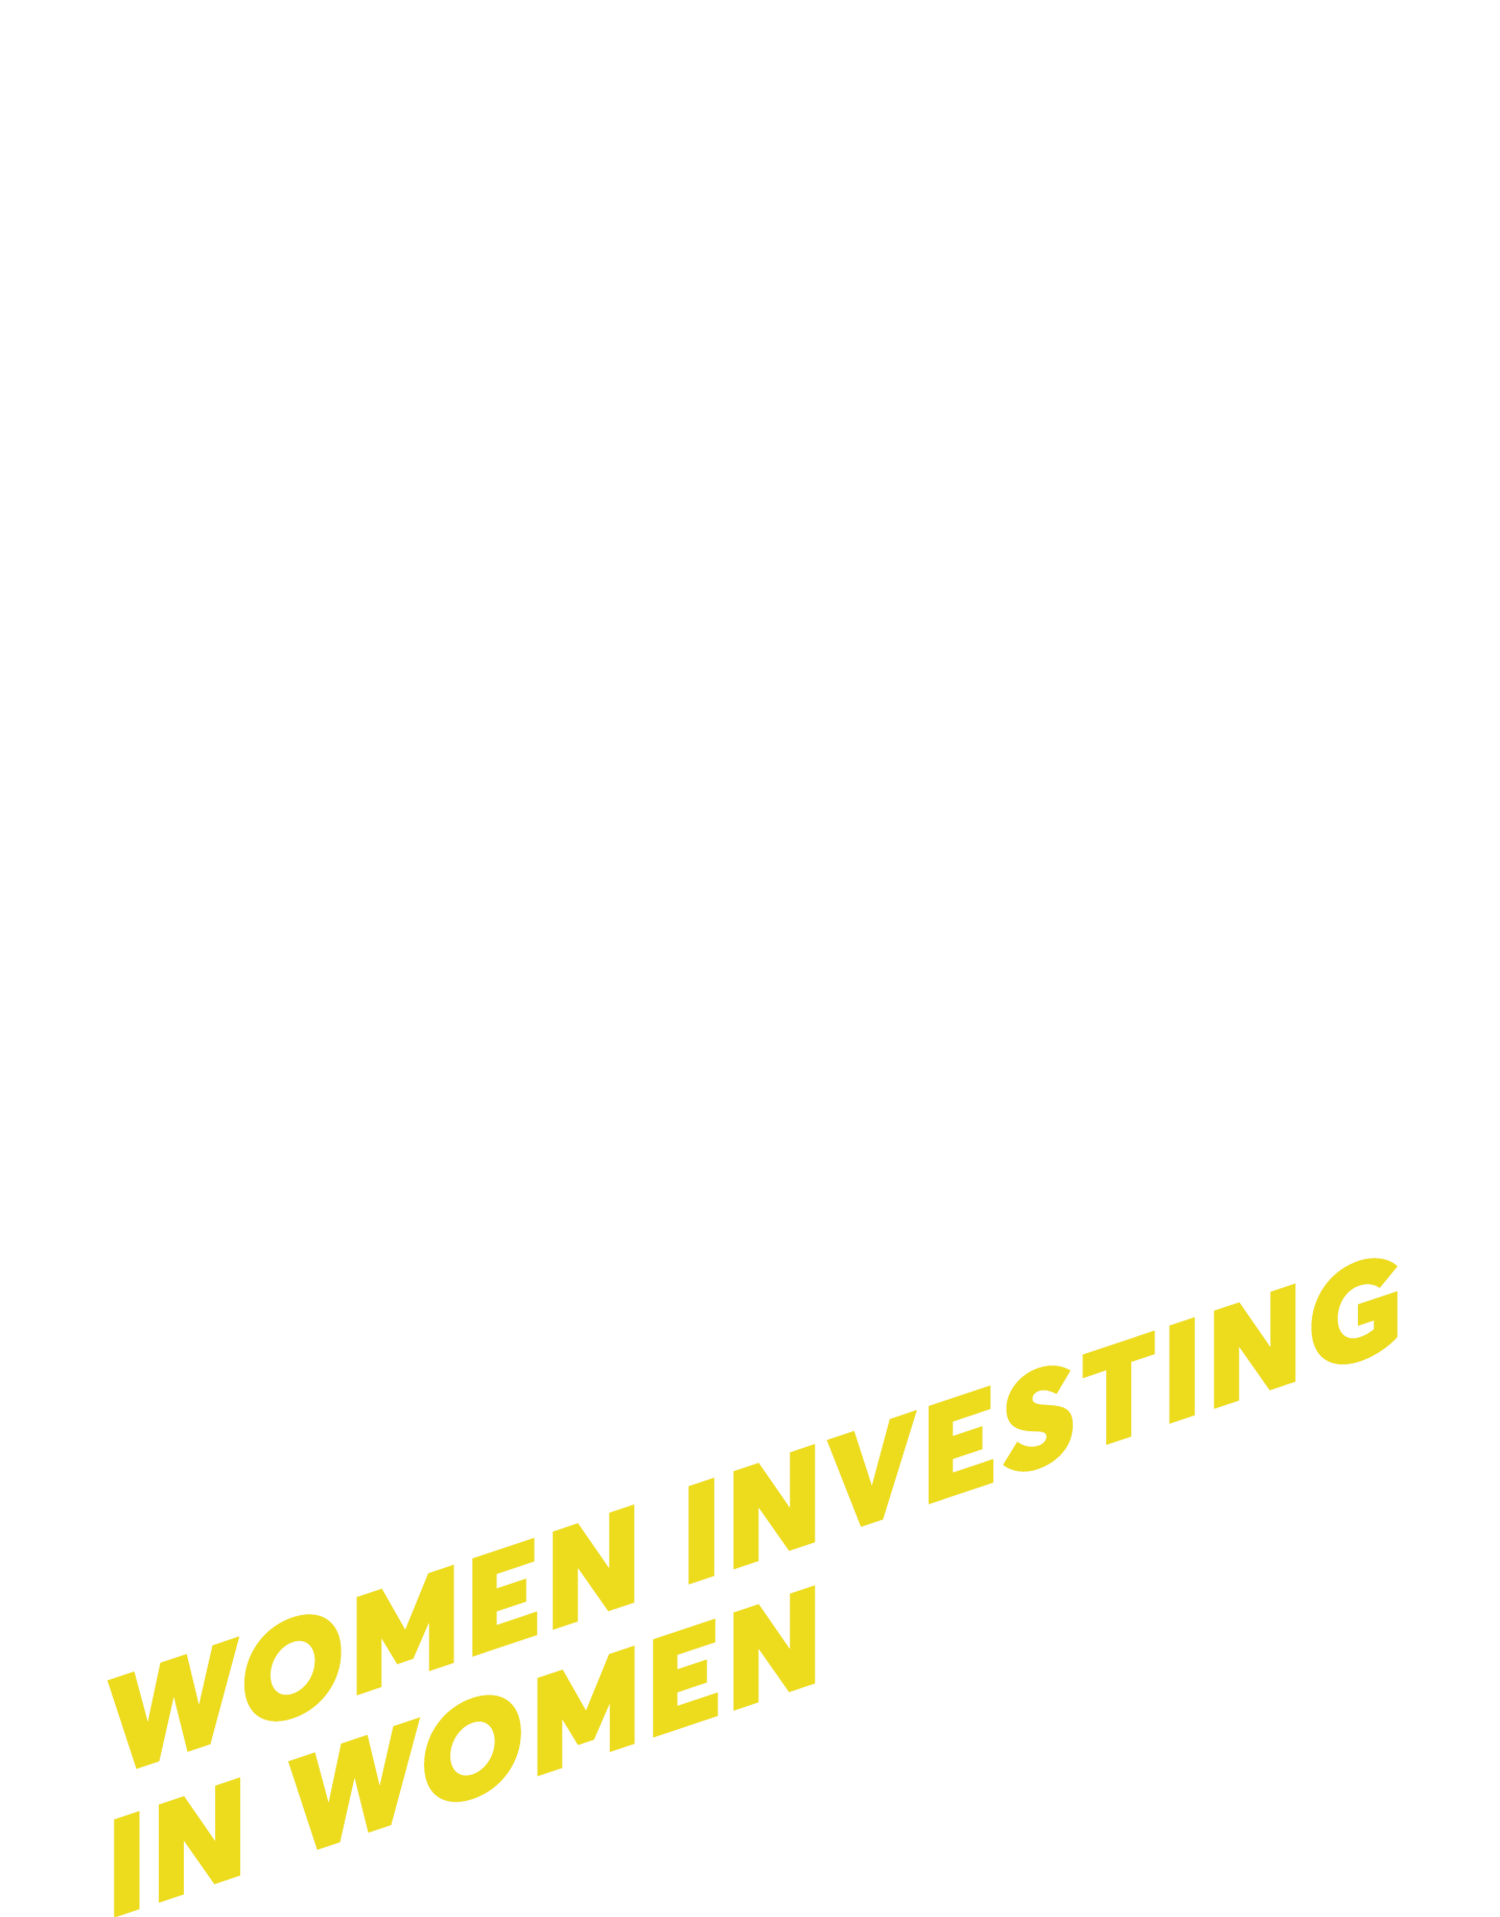 Next Act Fund 